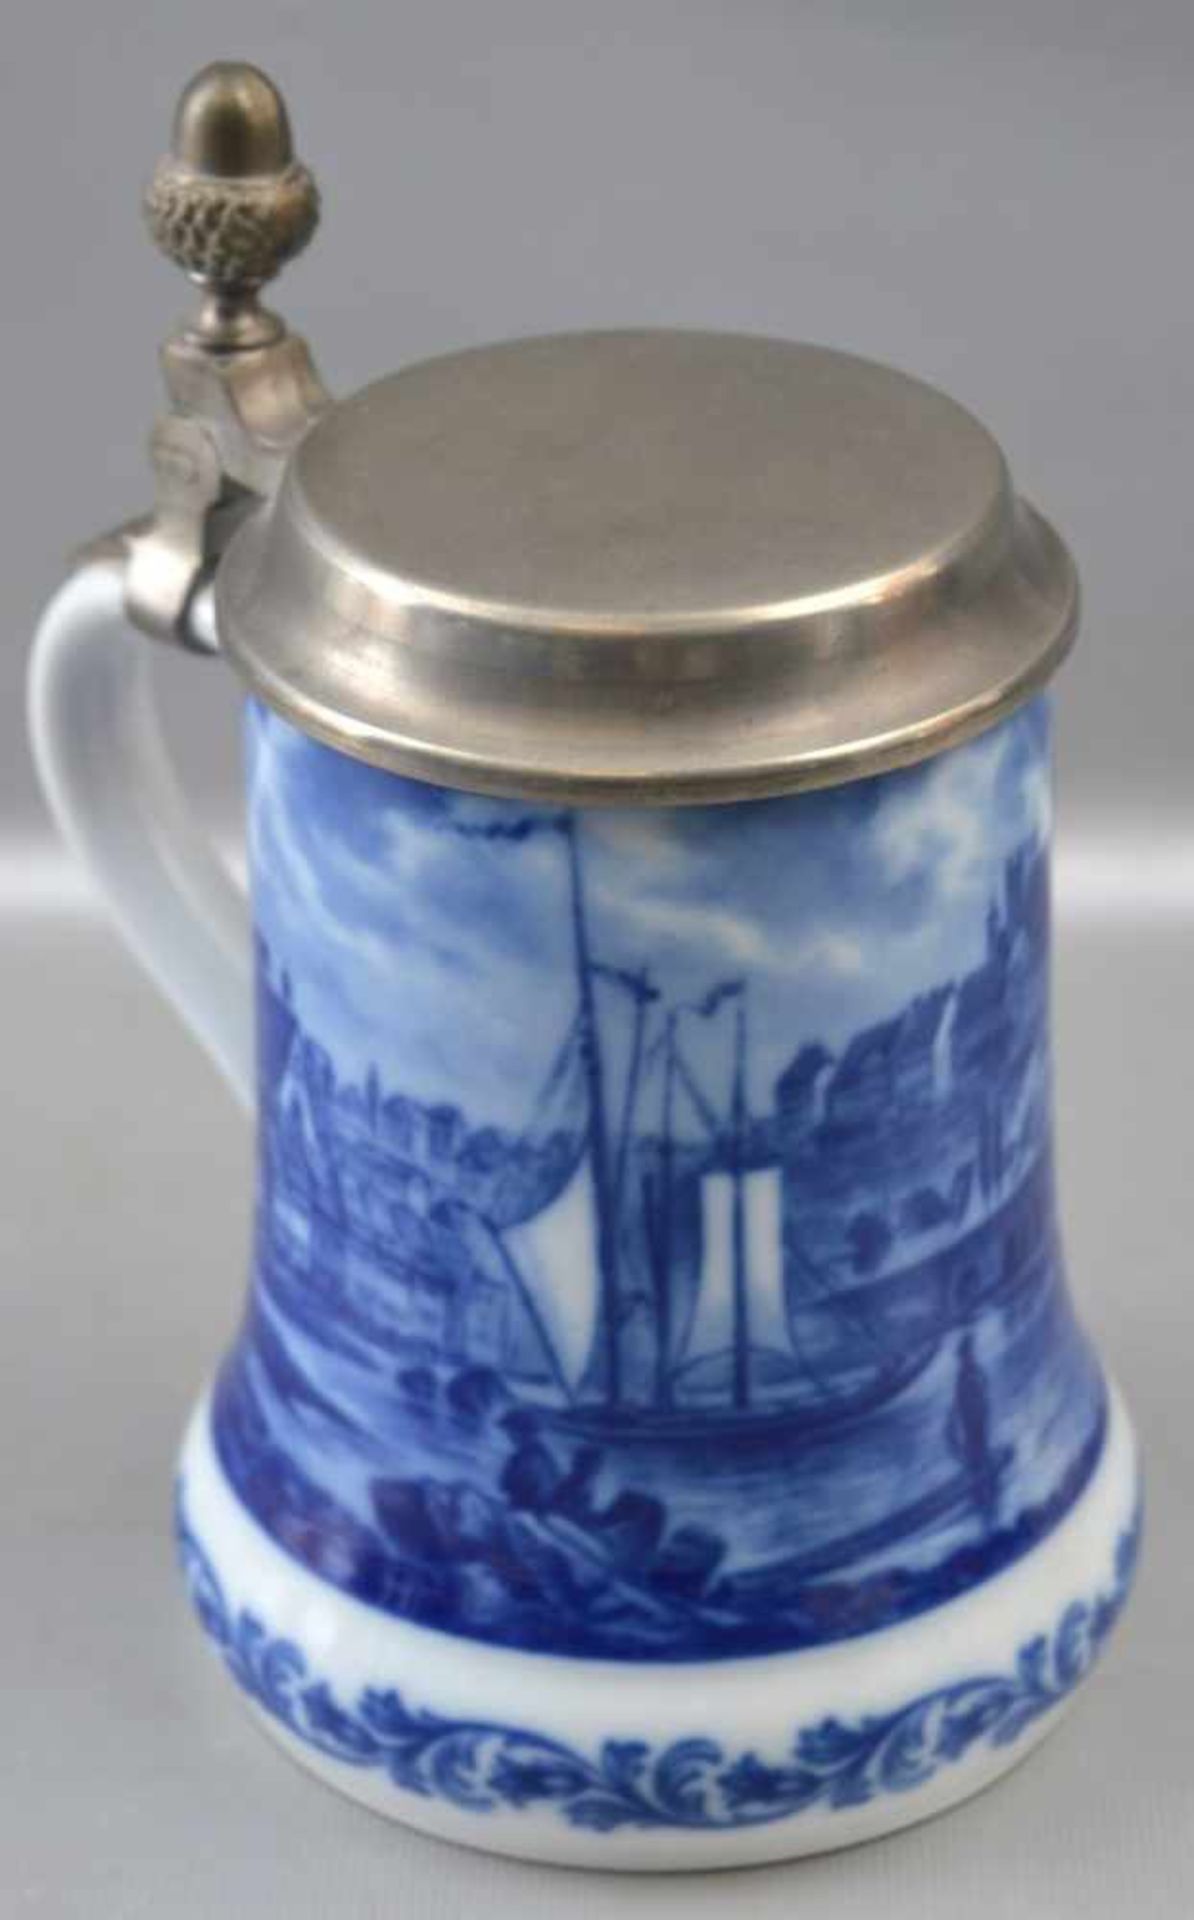 Bierkrug Porzellan, Wandung mit Teilansicht von Meissen weiß/blau bemalt, Zinndeckel, H 17 cm